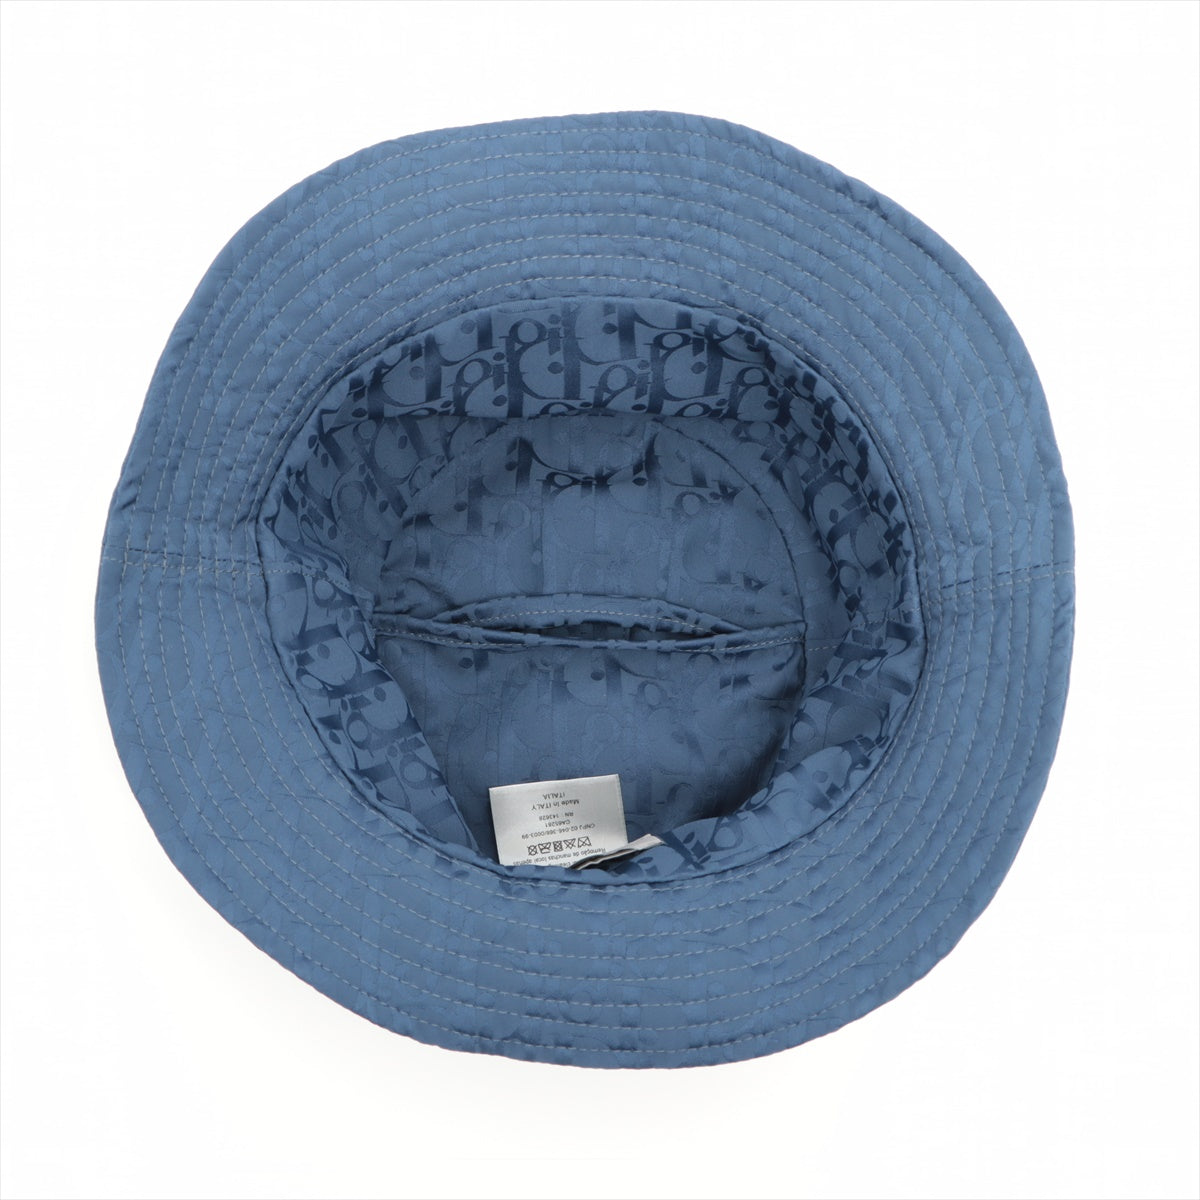 DIOR Bucket Hat Polyester Blue 283C906C5545